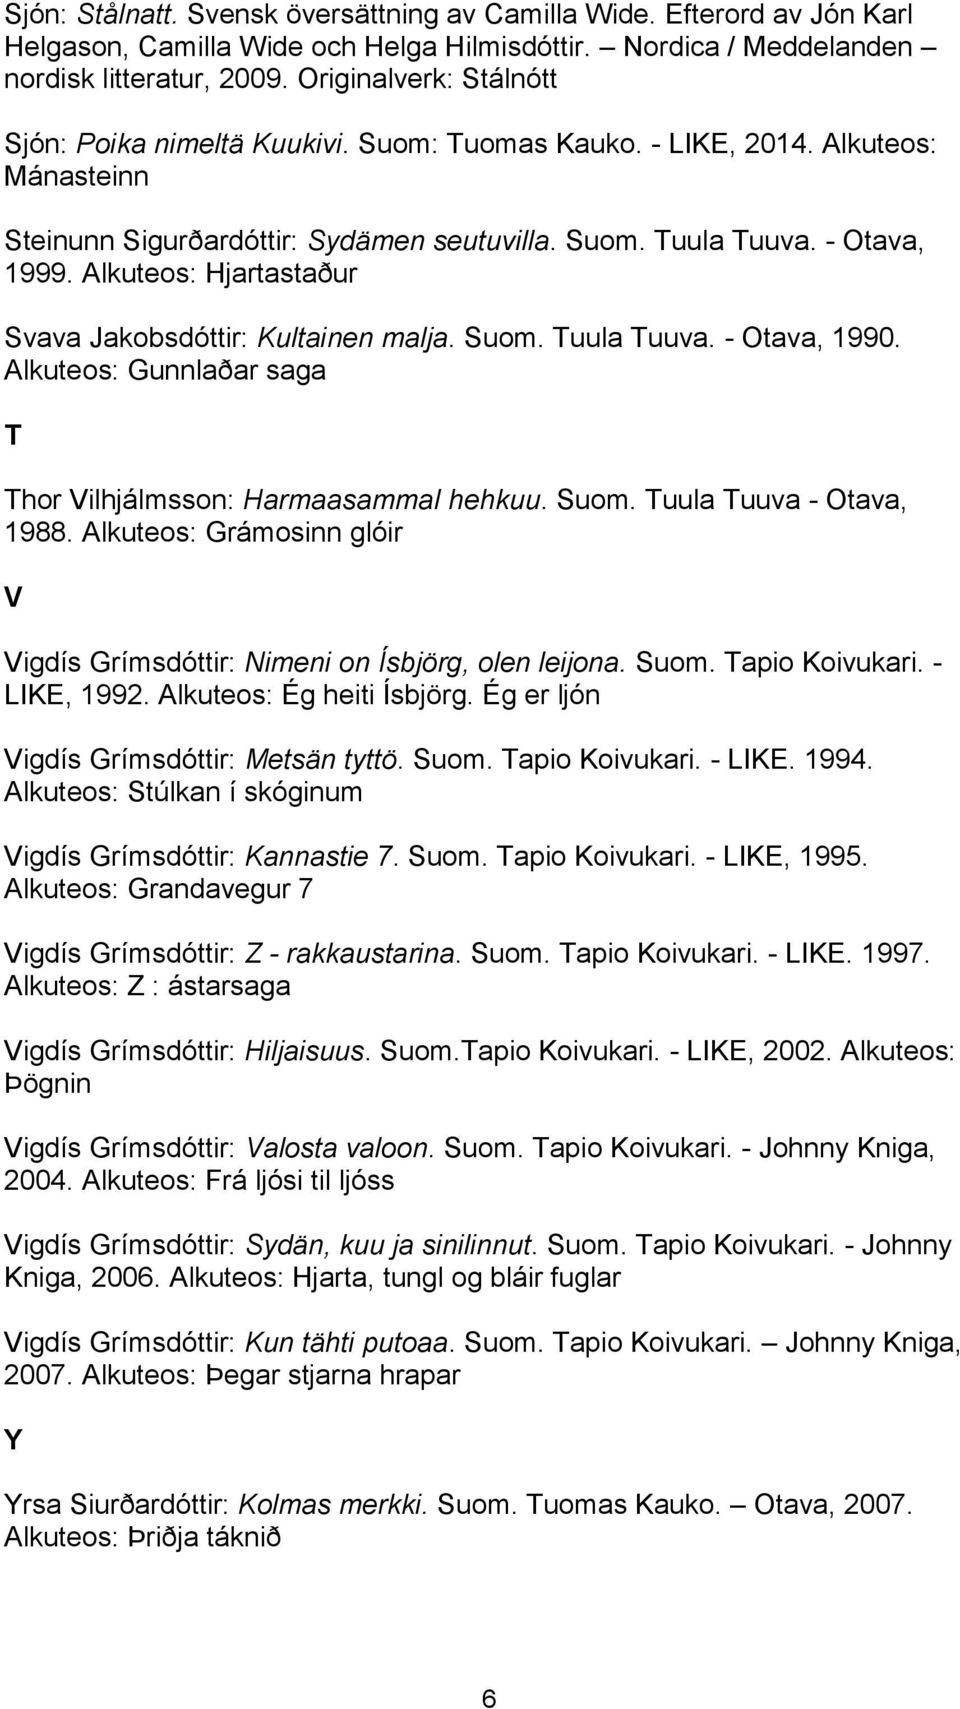 Alkuteos: Hjartastaður Svava Jakobsdóttir: Kultainen malja. Suom. Tuula Tuuva. - Otava, 1990. Alkuteos: Gunnlaðar saga T Thor Vilhjálmsson: Harmaasammal hehkuu. Suom. Tuula Tuuva - Otava, 1988.